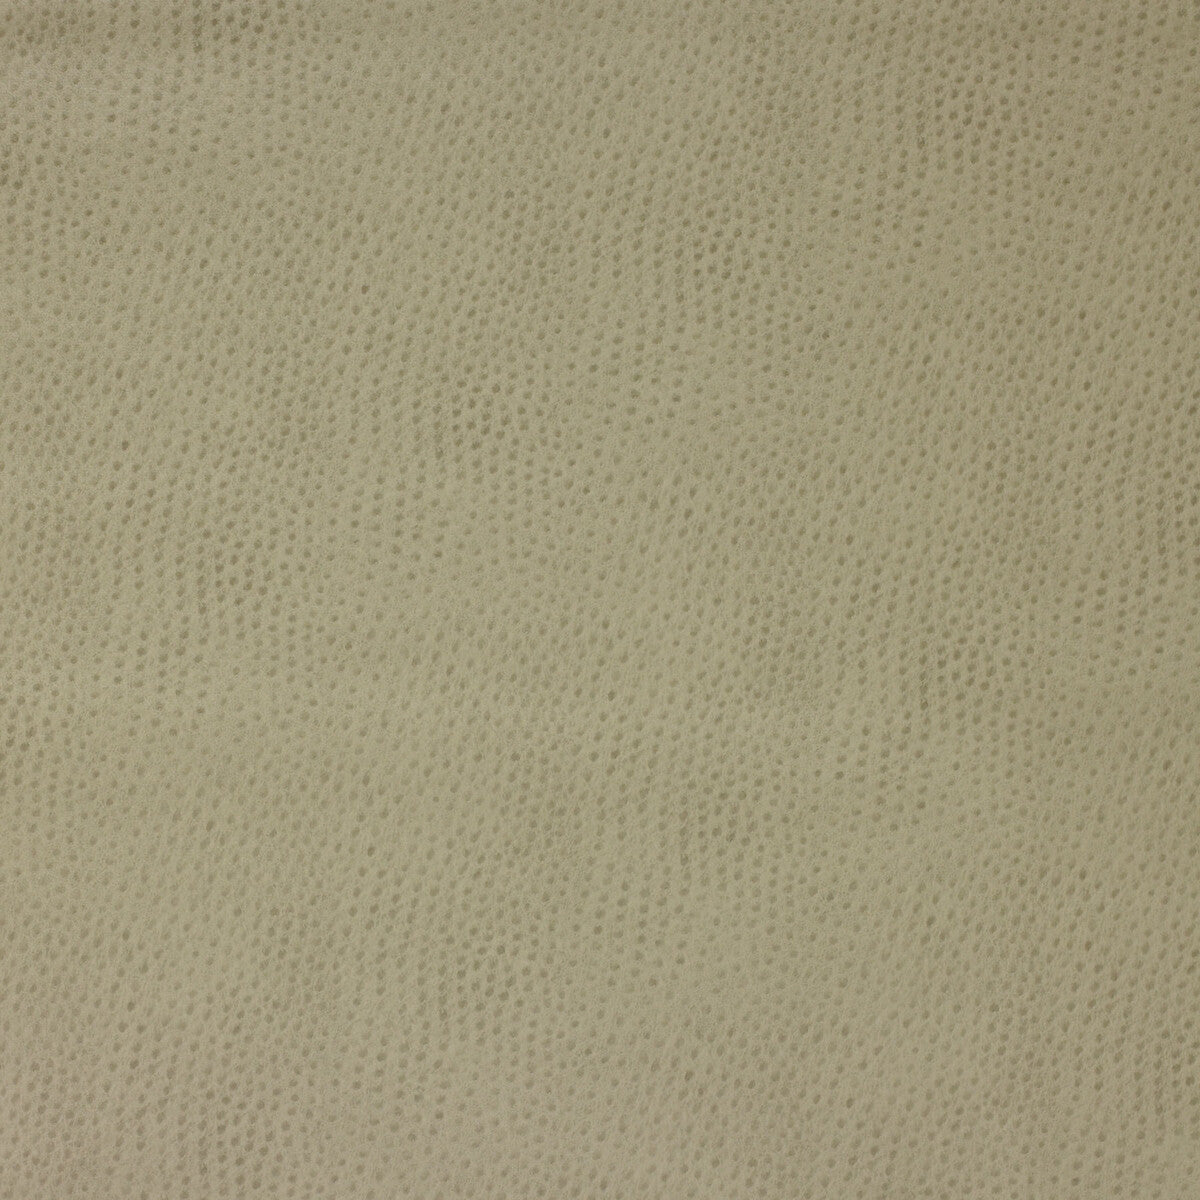 Kravet Design fabric in delaney-106 color - pattern DELANEY.106.0 - by Kravet Design